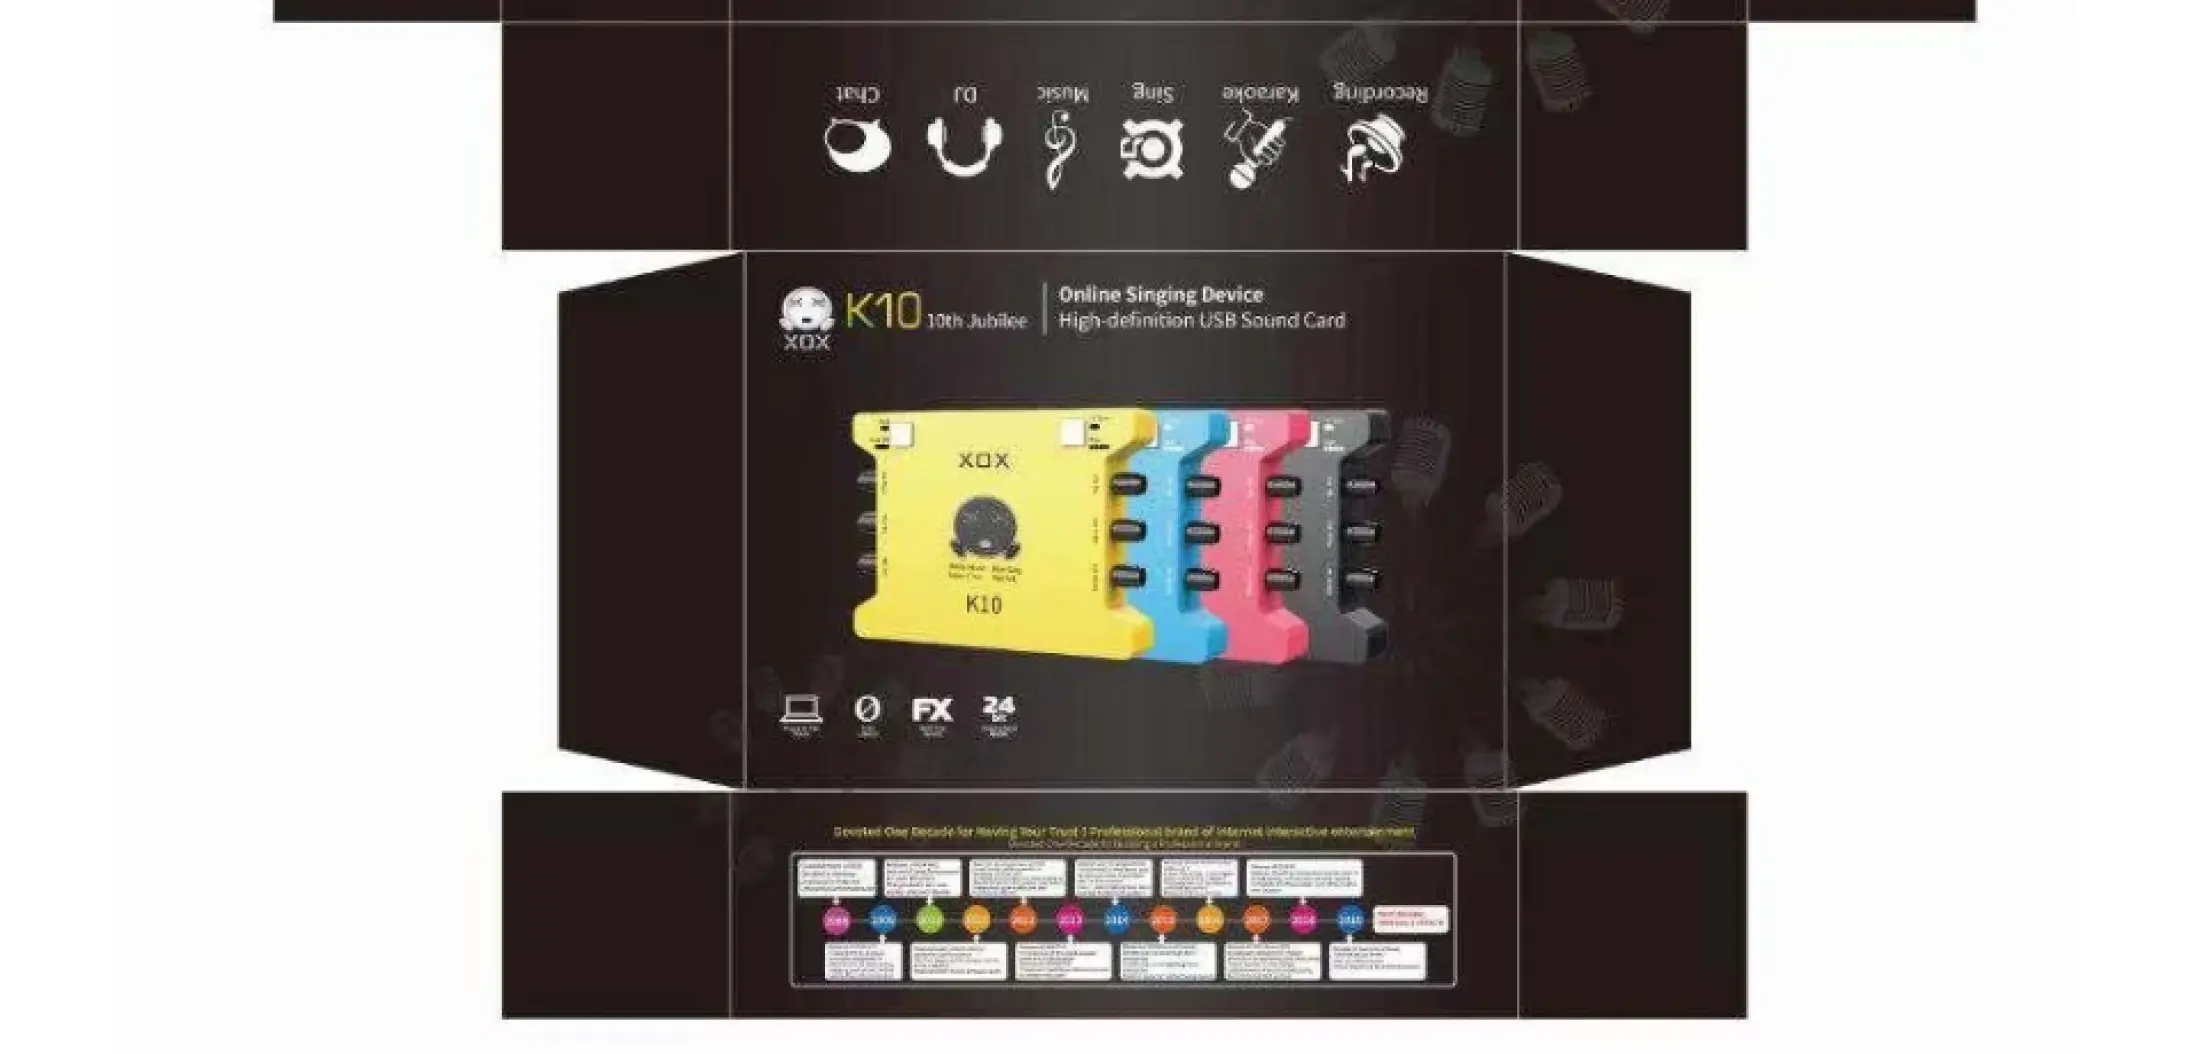 Sound Card XOX K10 Phiên Bản Đặc Biệt Kỷ Niệm 10 Năm